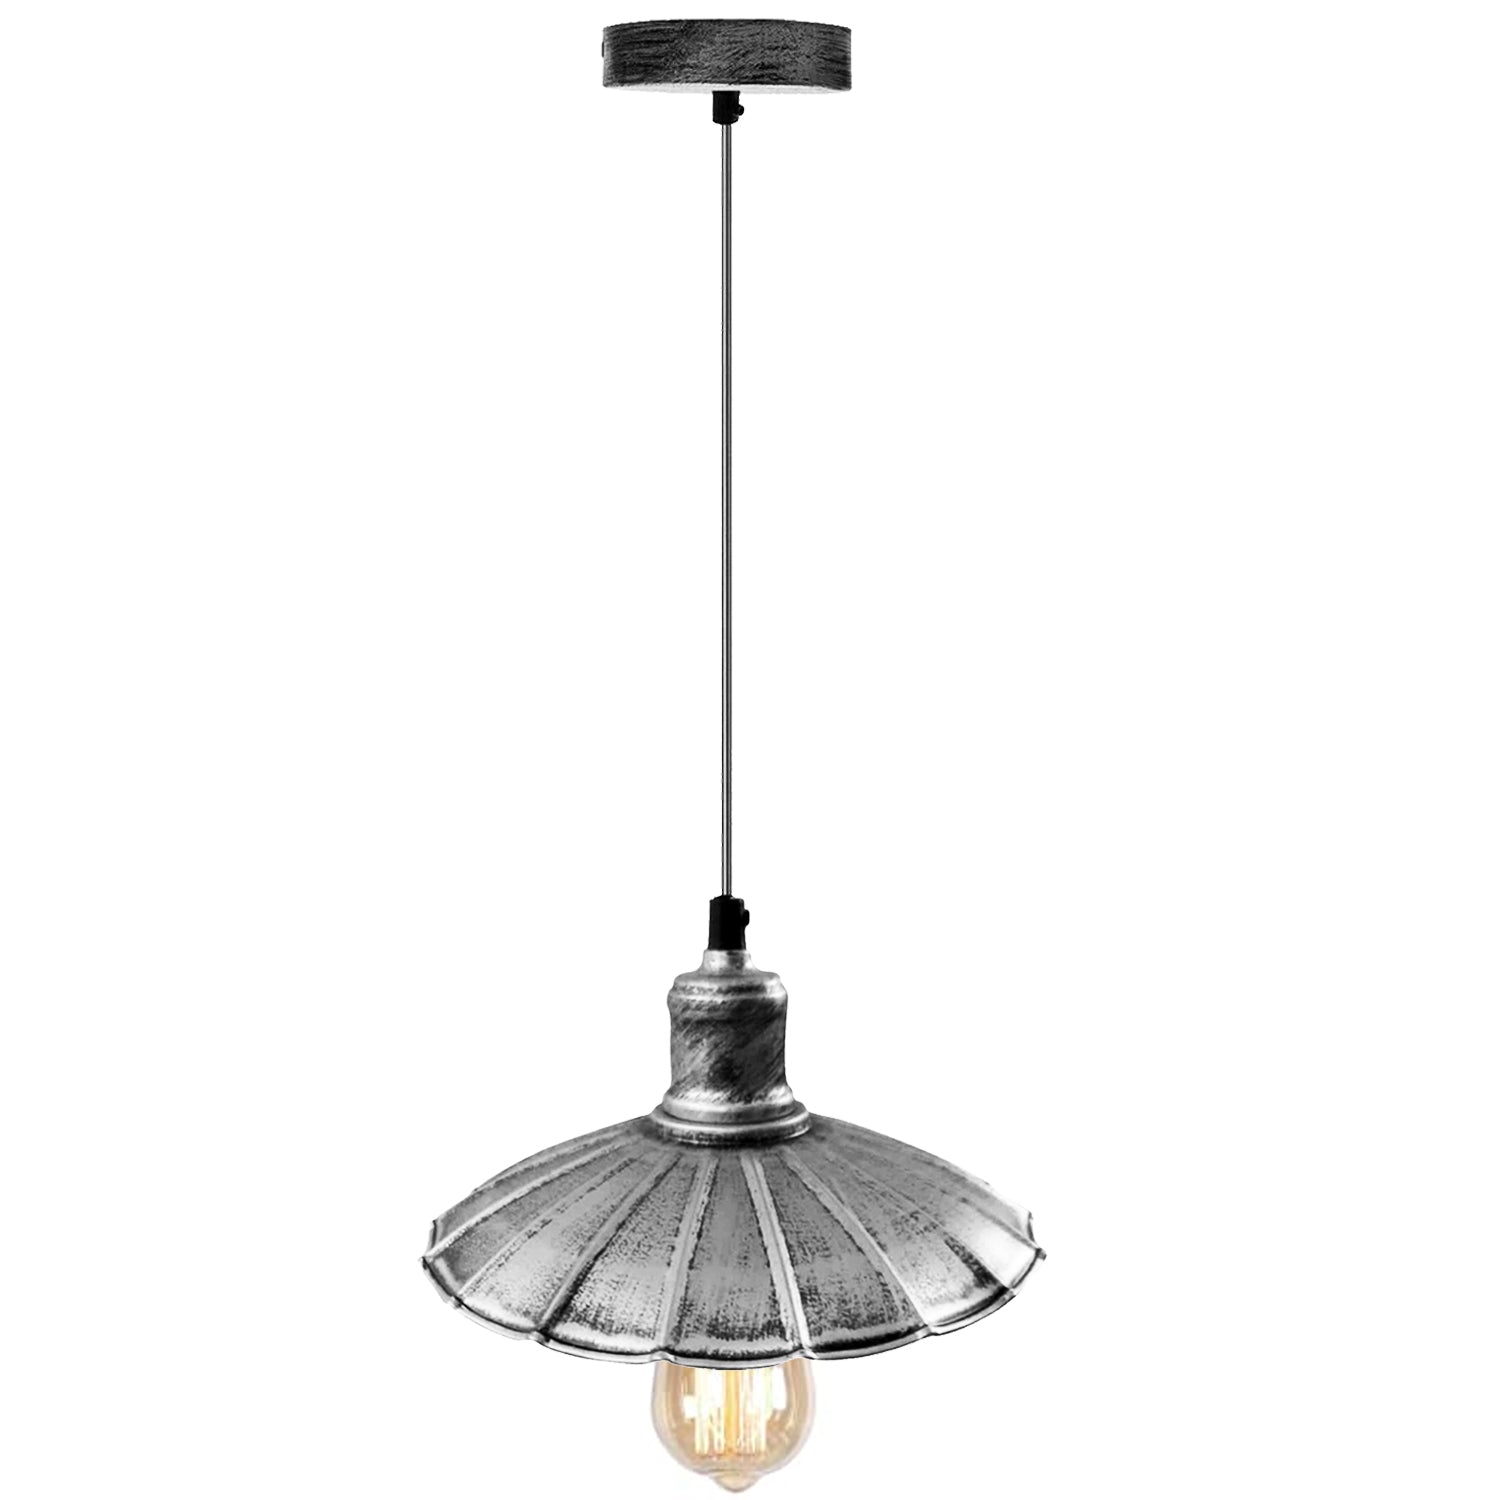 Se Børstet sølv industrielt design køkkenlampe E27 pendel retro pendel lampearmatur hos Lammeuld.dk